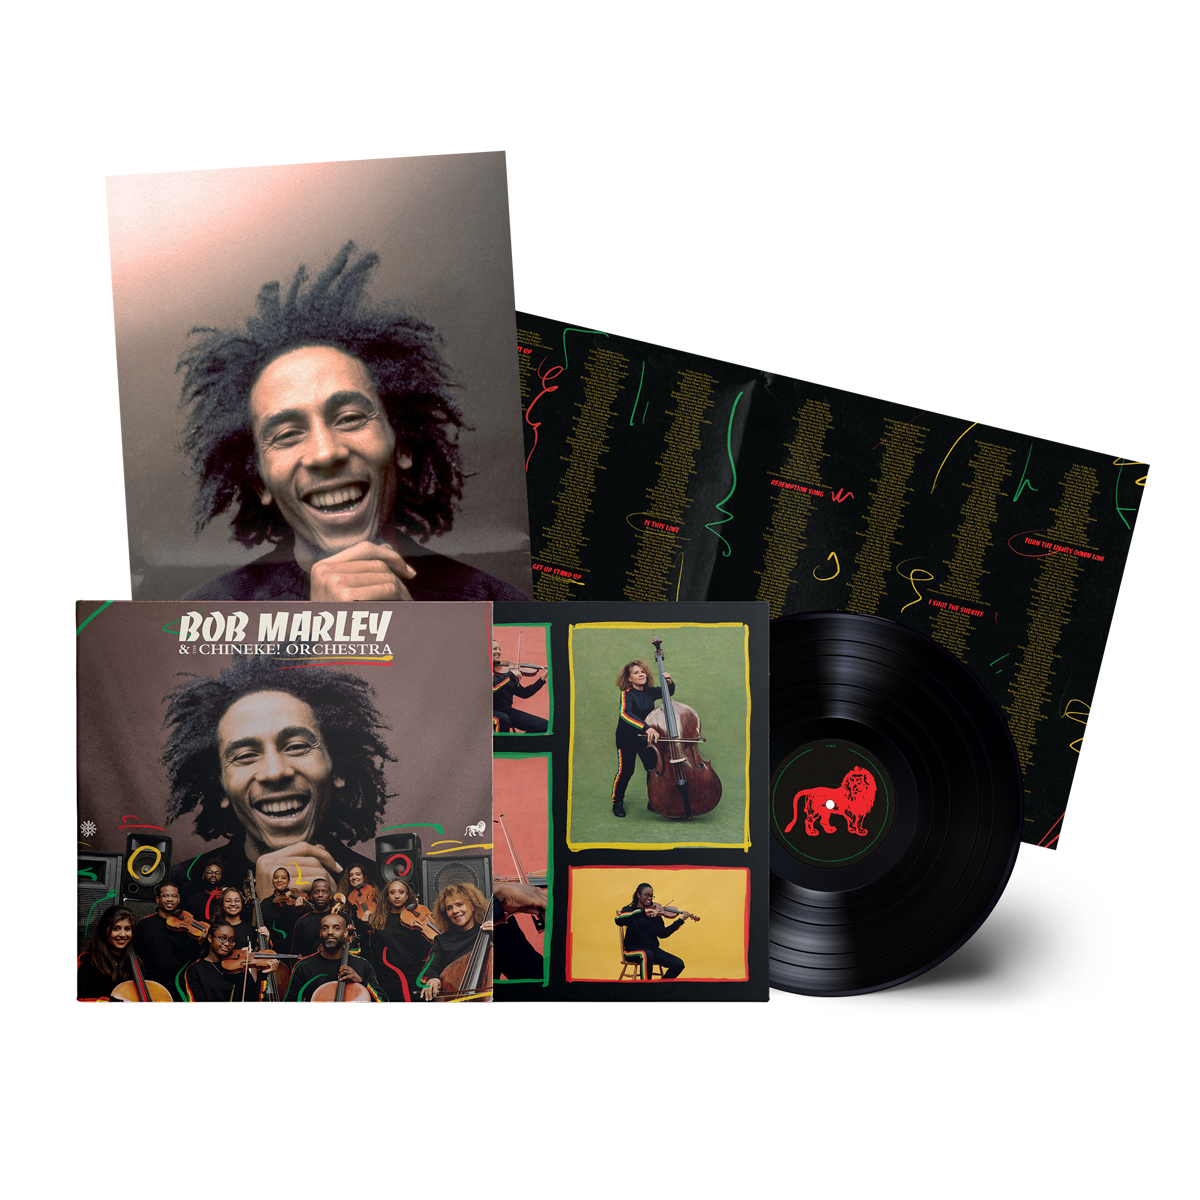 Bob Marley & The Wailers, Chineke! Orchestra - Bob Marley and the Chineke! Orchestra: Vinyl LP